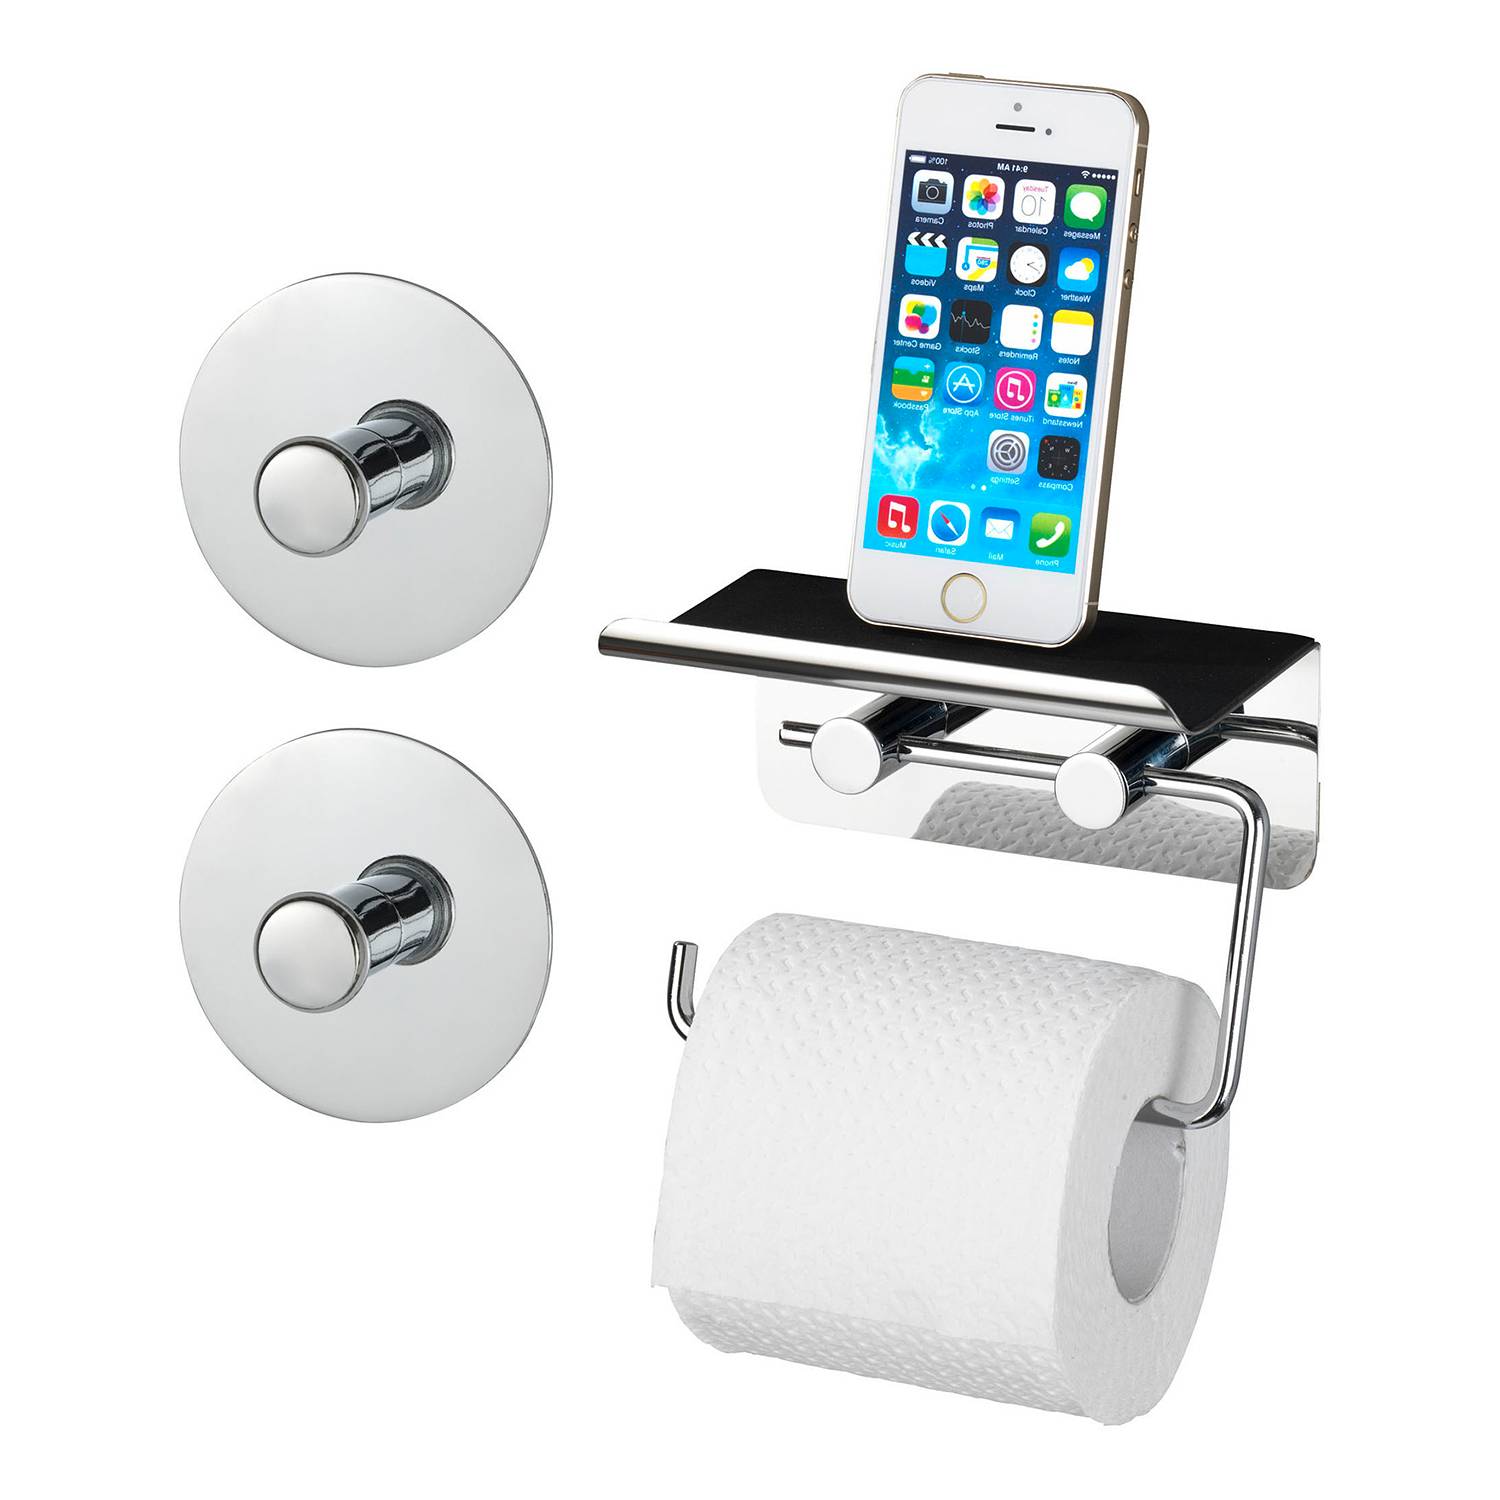 Toilettenpapierhalter Smartphone | home24 Ablage kaufen